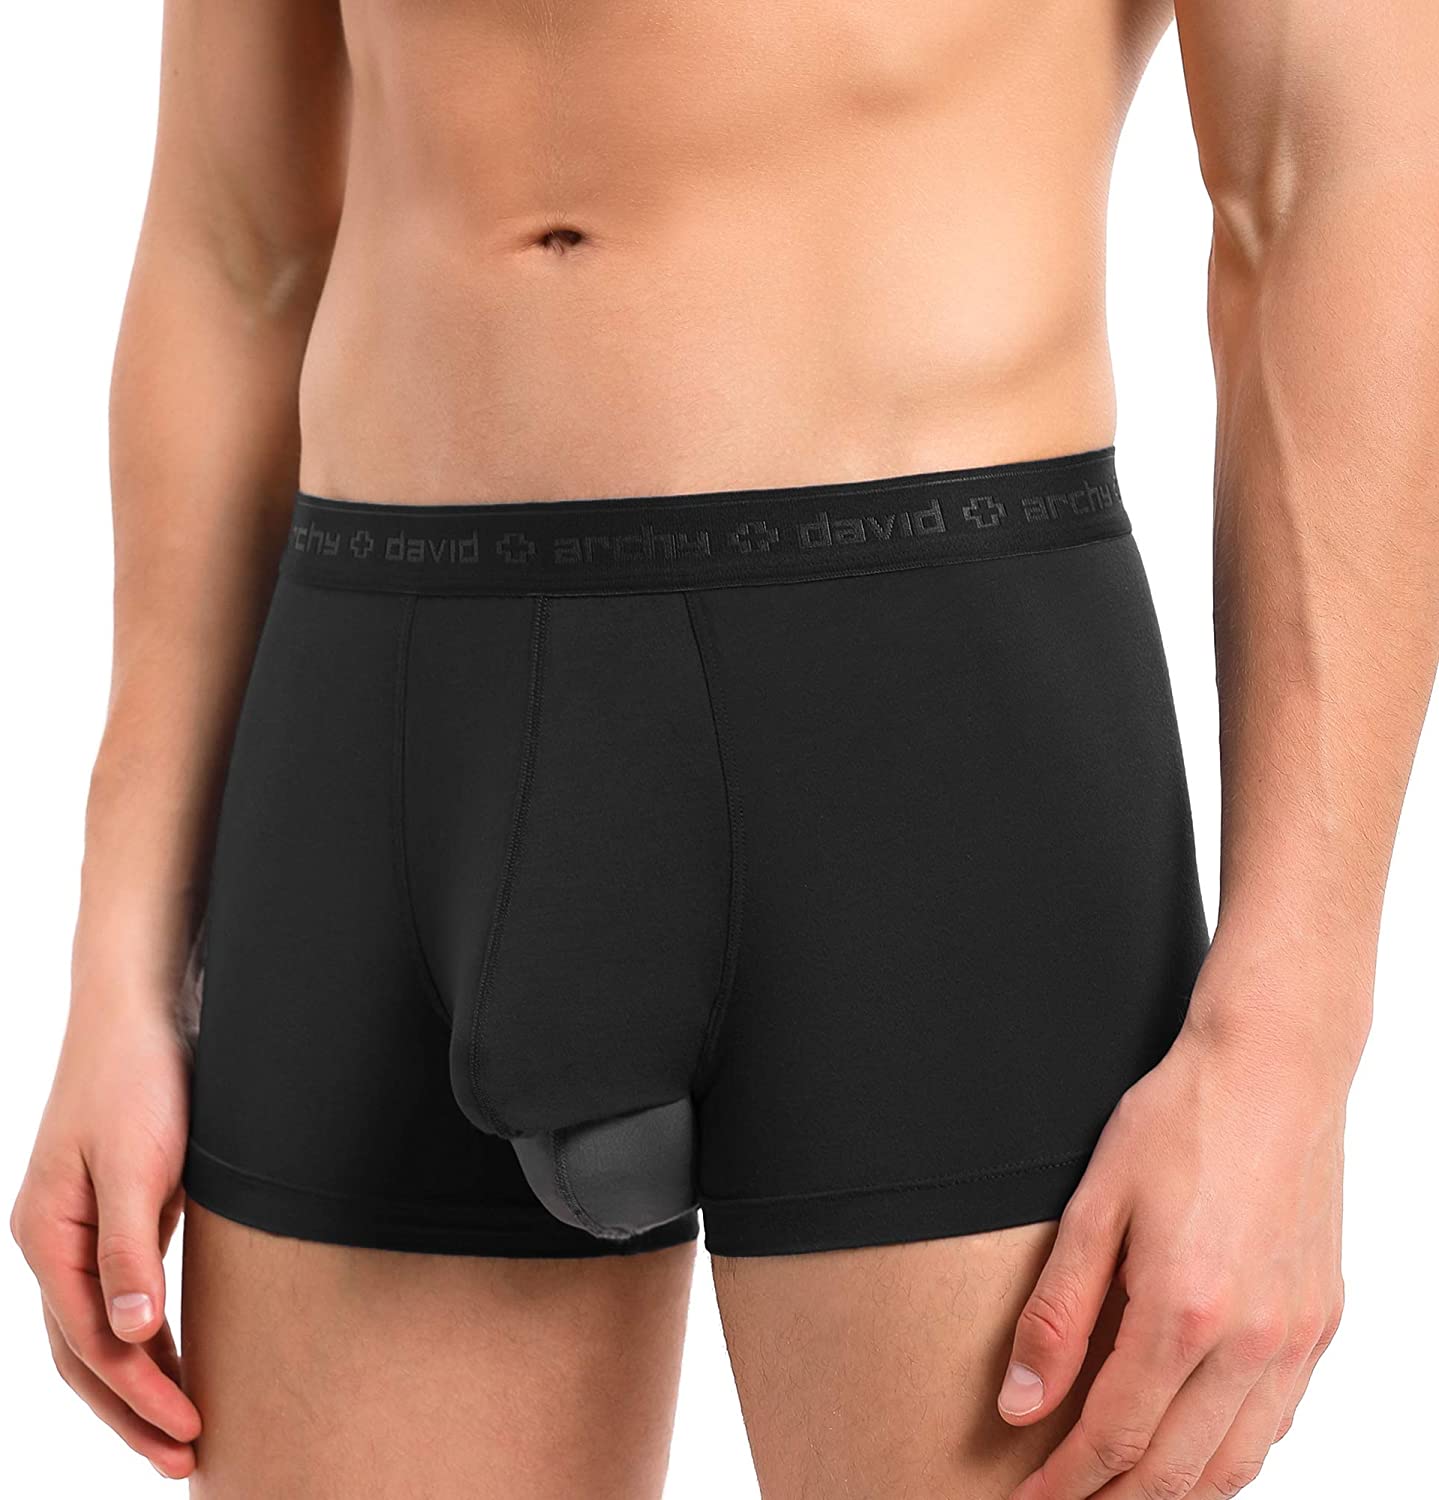 david archy brand underwear